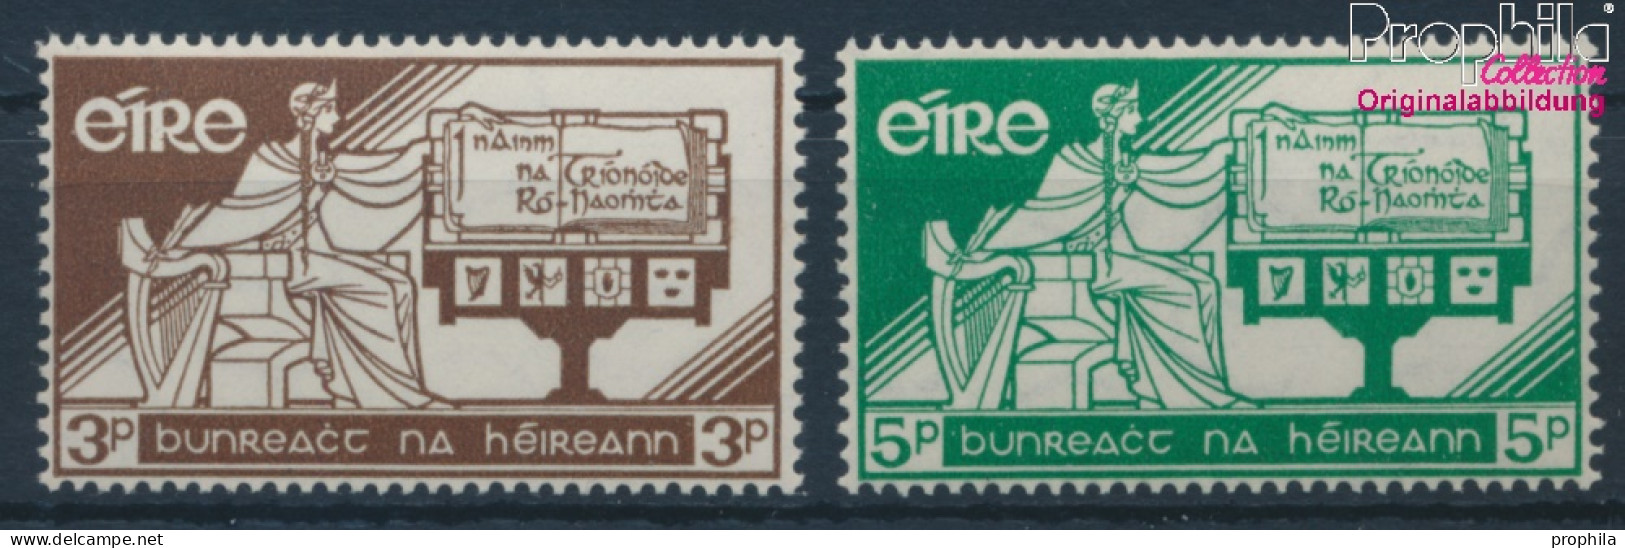 Irland 140-141 (kompl.Ausg.) Postfrisch 1958 Verfassung (10398346 - Unused Stamps